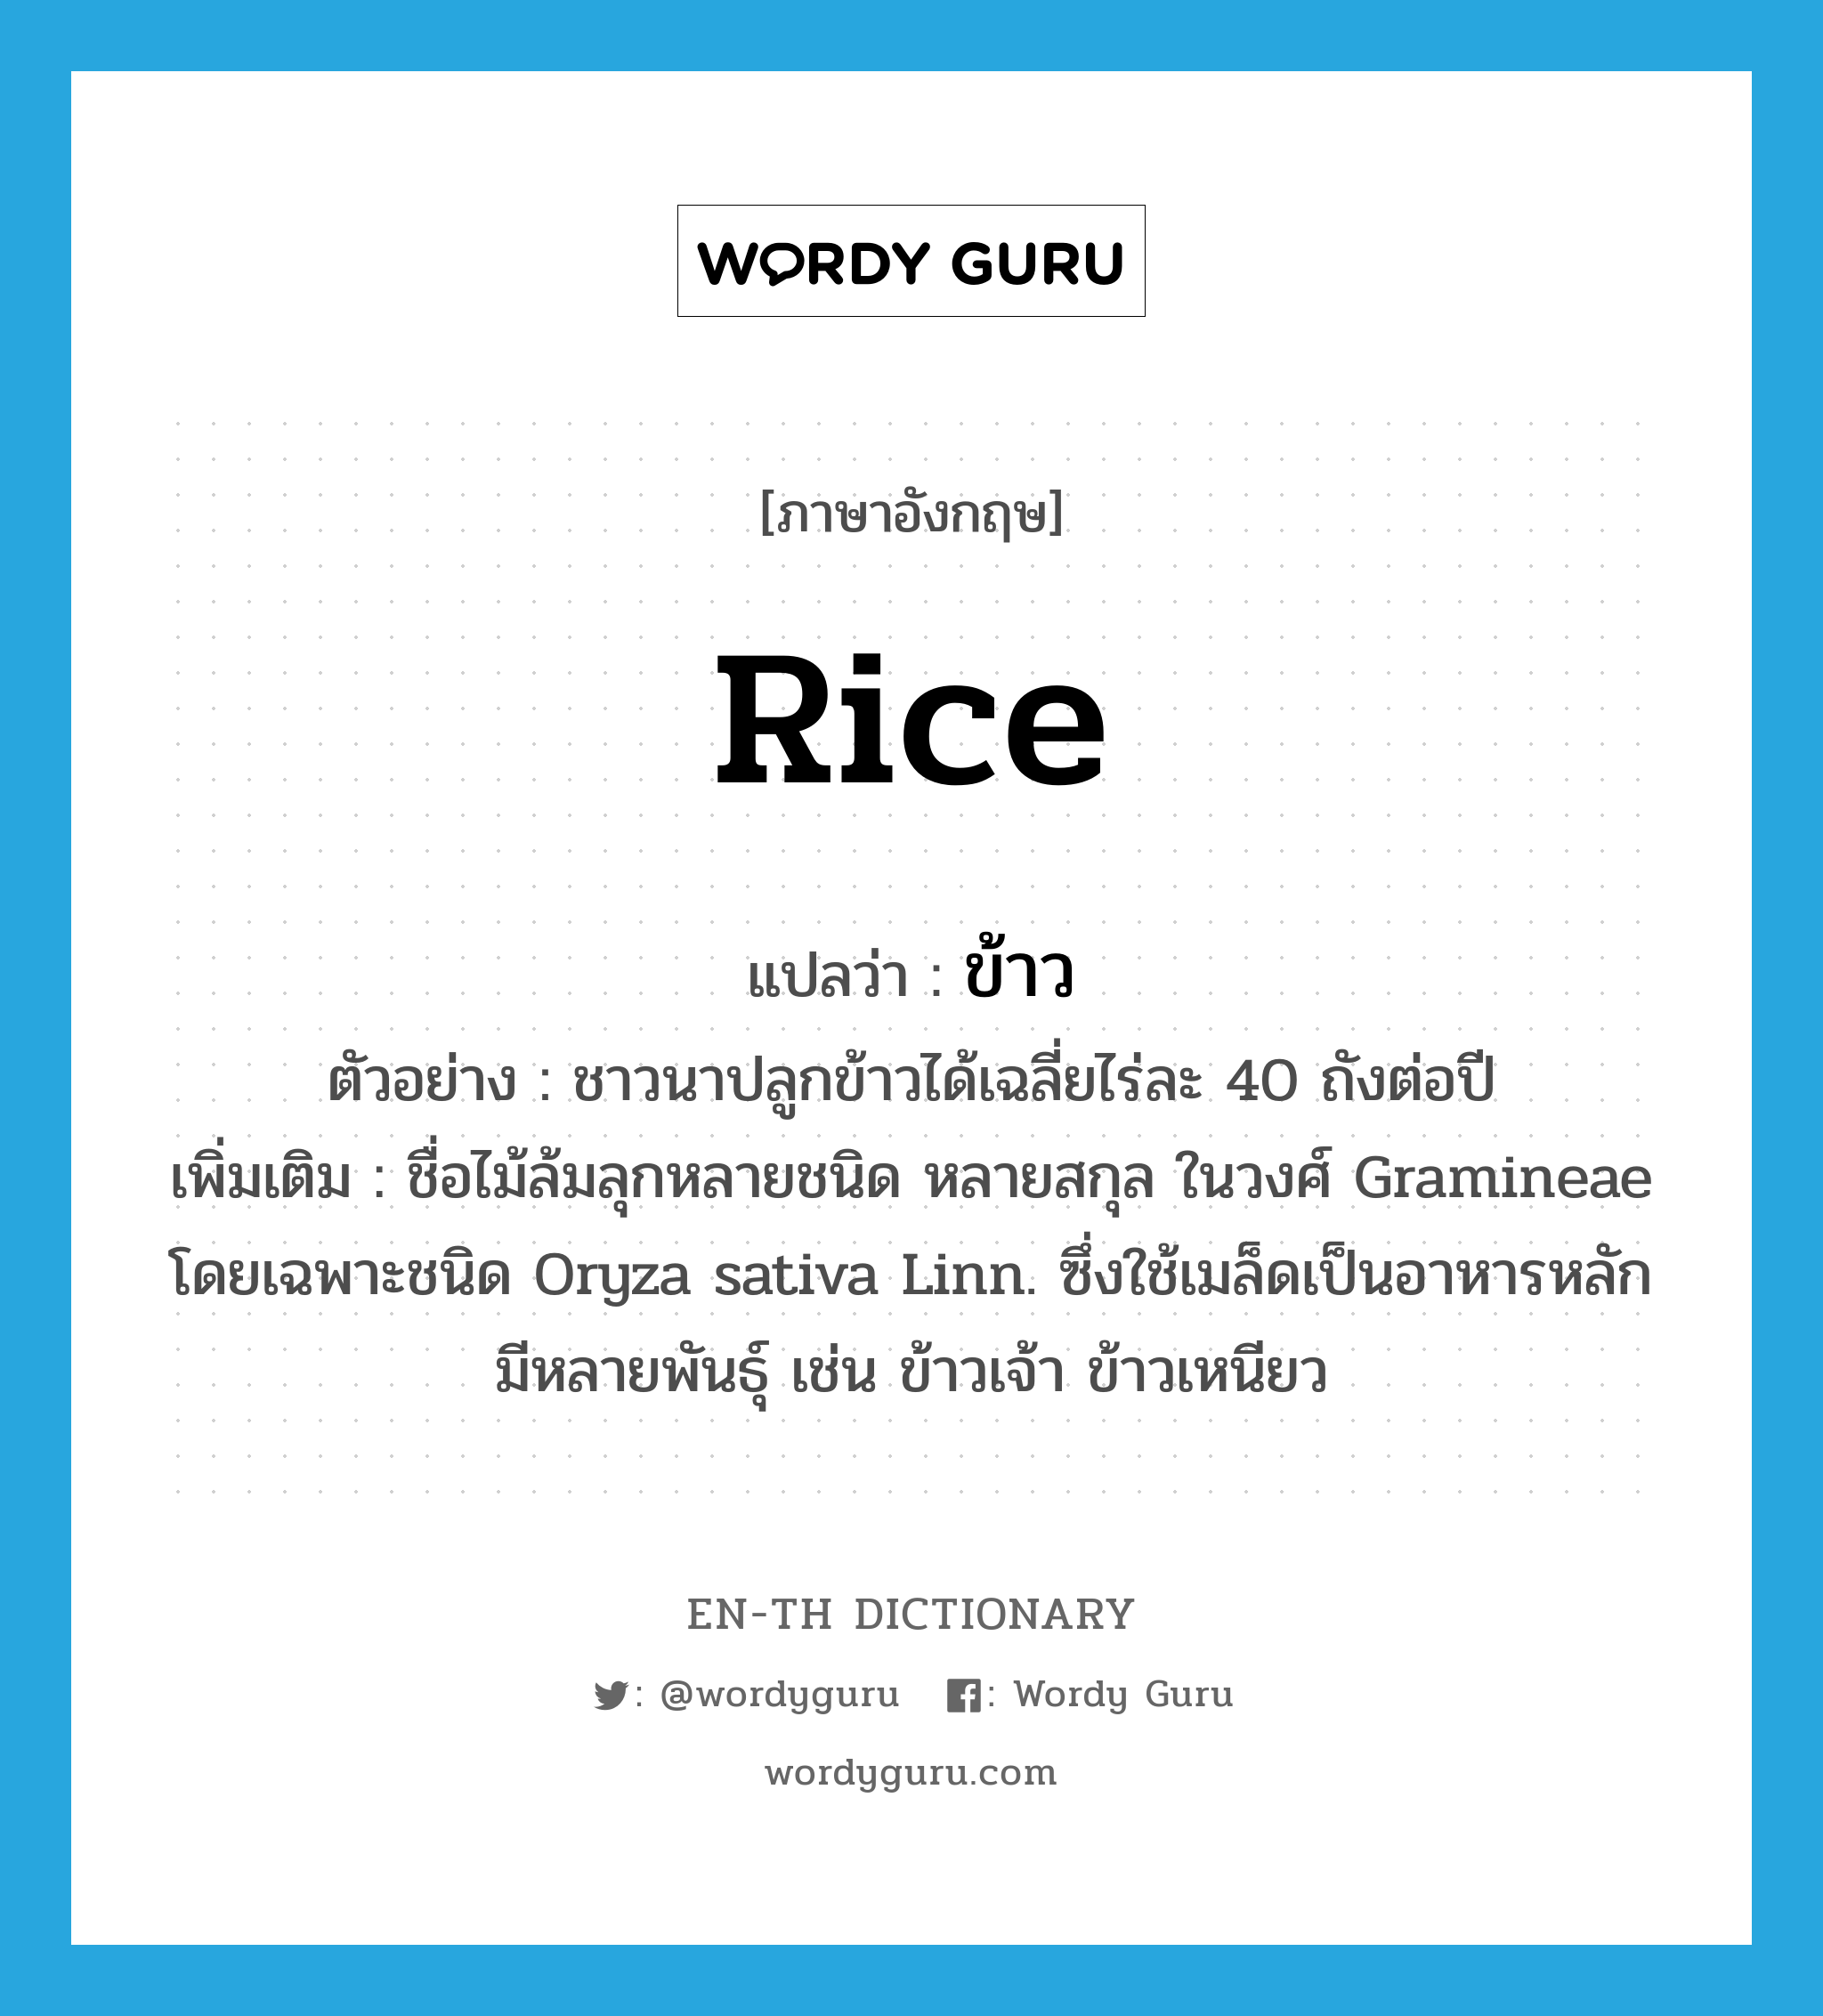 rice แปลว่า?, คำศัพท์ภาษาอังกฤษ rice แปลว่า ข้าว ประเภท N ตัวอย่าง ชาวนาปลูกข้าวได้เฉลี่ยไร่ละ 40 ถังต่อปี เพิ่มเติม ชื่อไม้ล้มลุกหลายชนิด หลายสกุล ในวงศ์ Gramineae โดยเฉพาะชนิด Oryza sativa Linn. ซึ่งใช้เมล็ดเป็นอาหารหลัก มีหลายพันธุ์ เช่น ข้าวเจ้า ข้าวเหนียว หมวด N